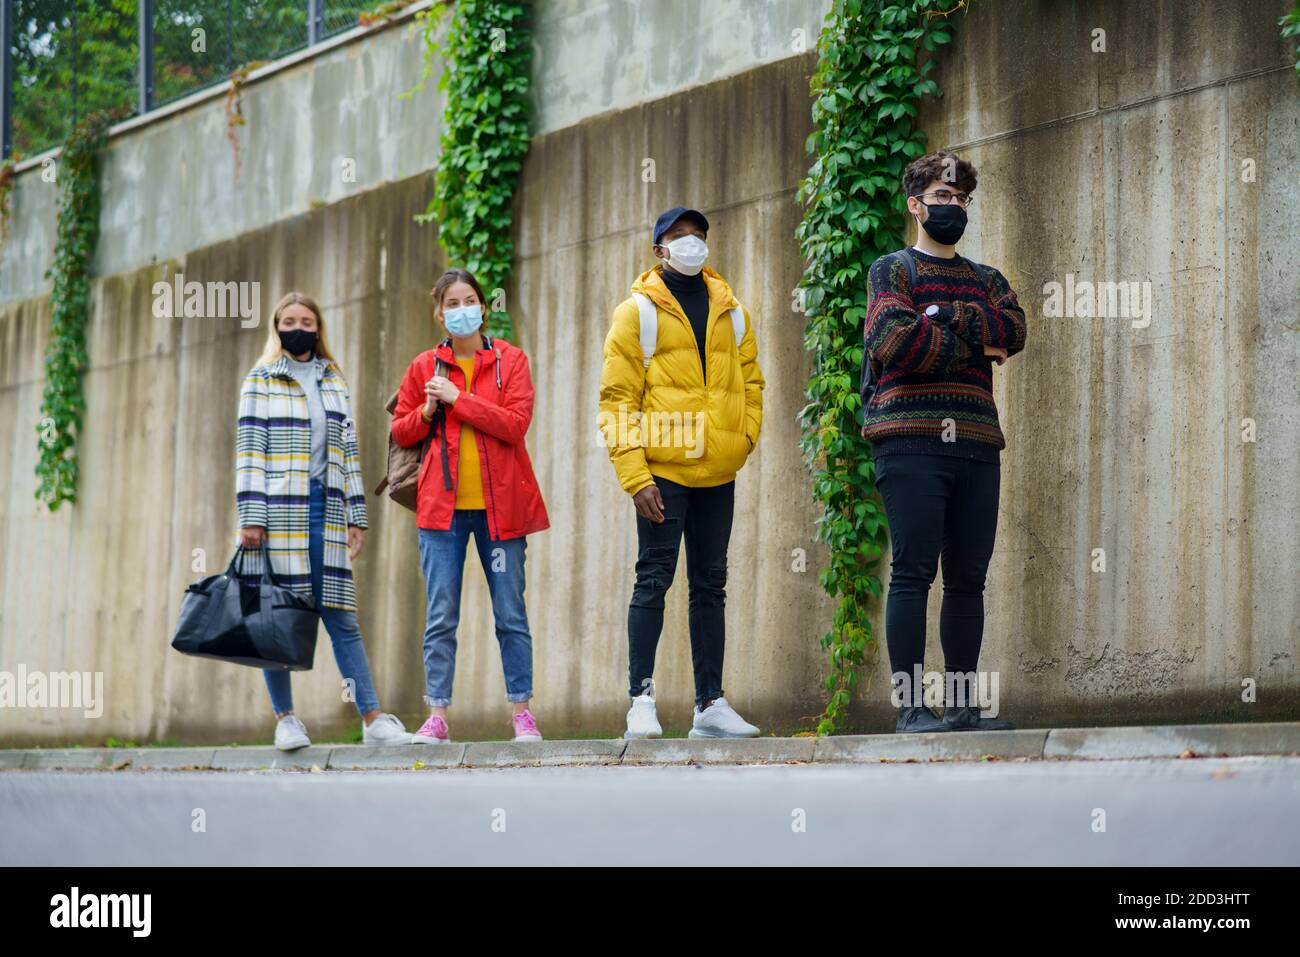 Junge Menschen stehen im Freien in der Stadt. Coronavirus und sicheres Entfernungskonzept. Stockfoto